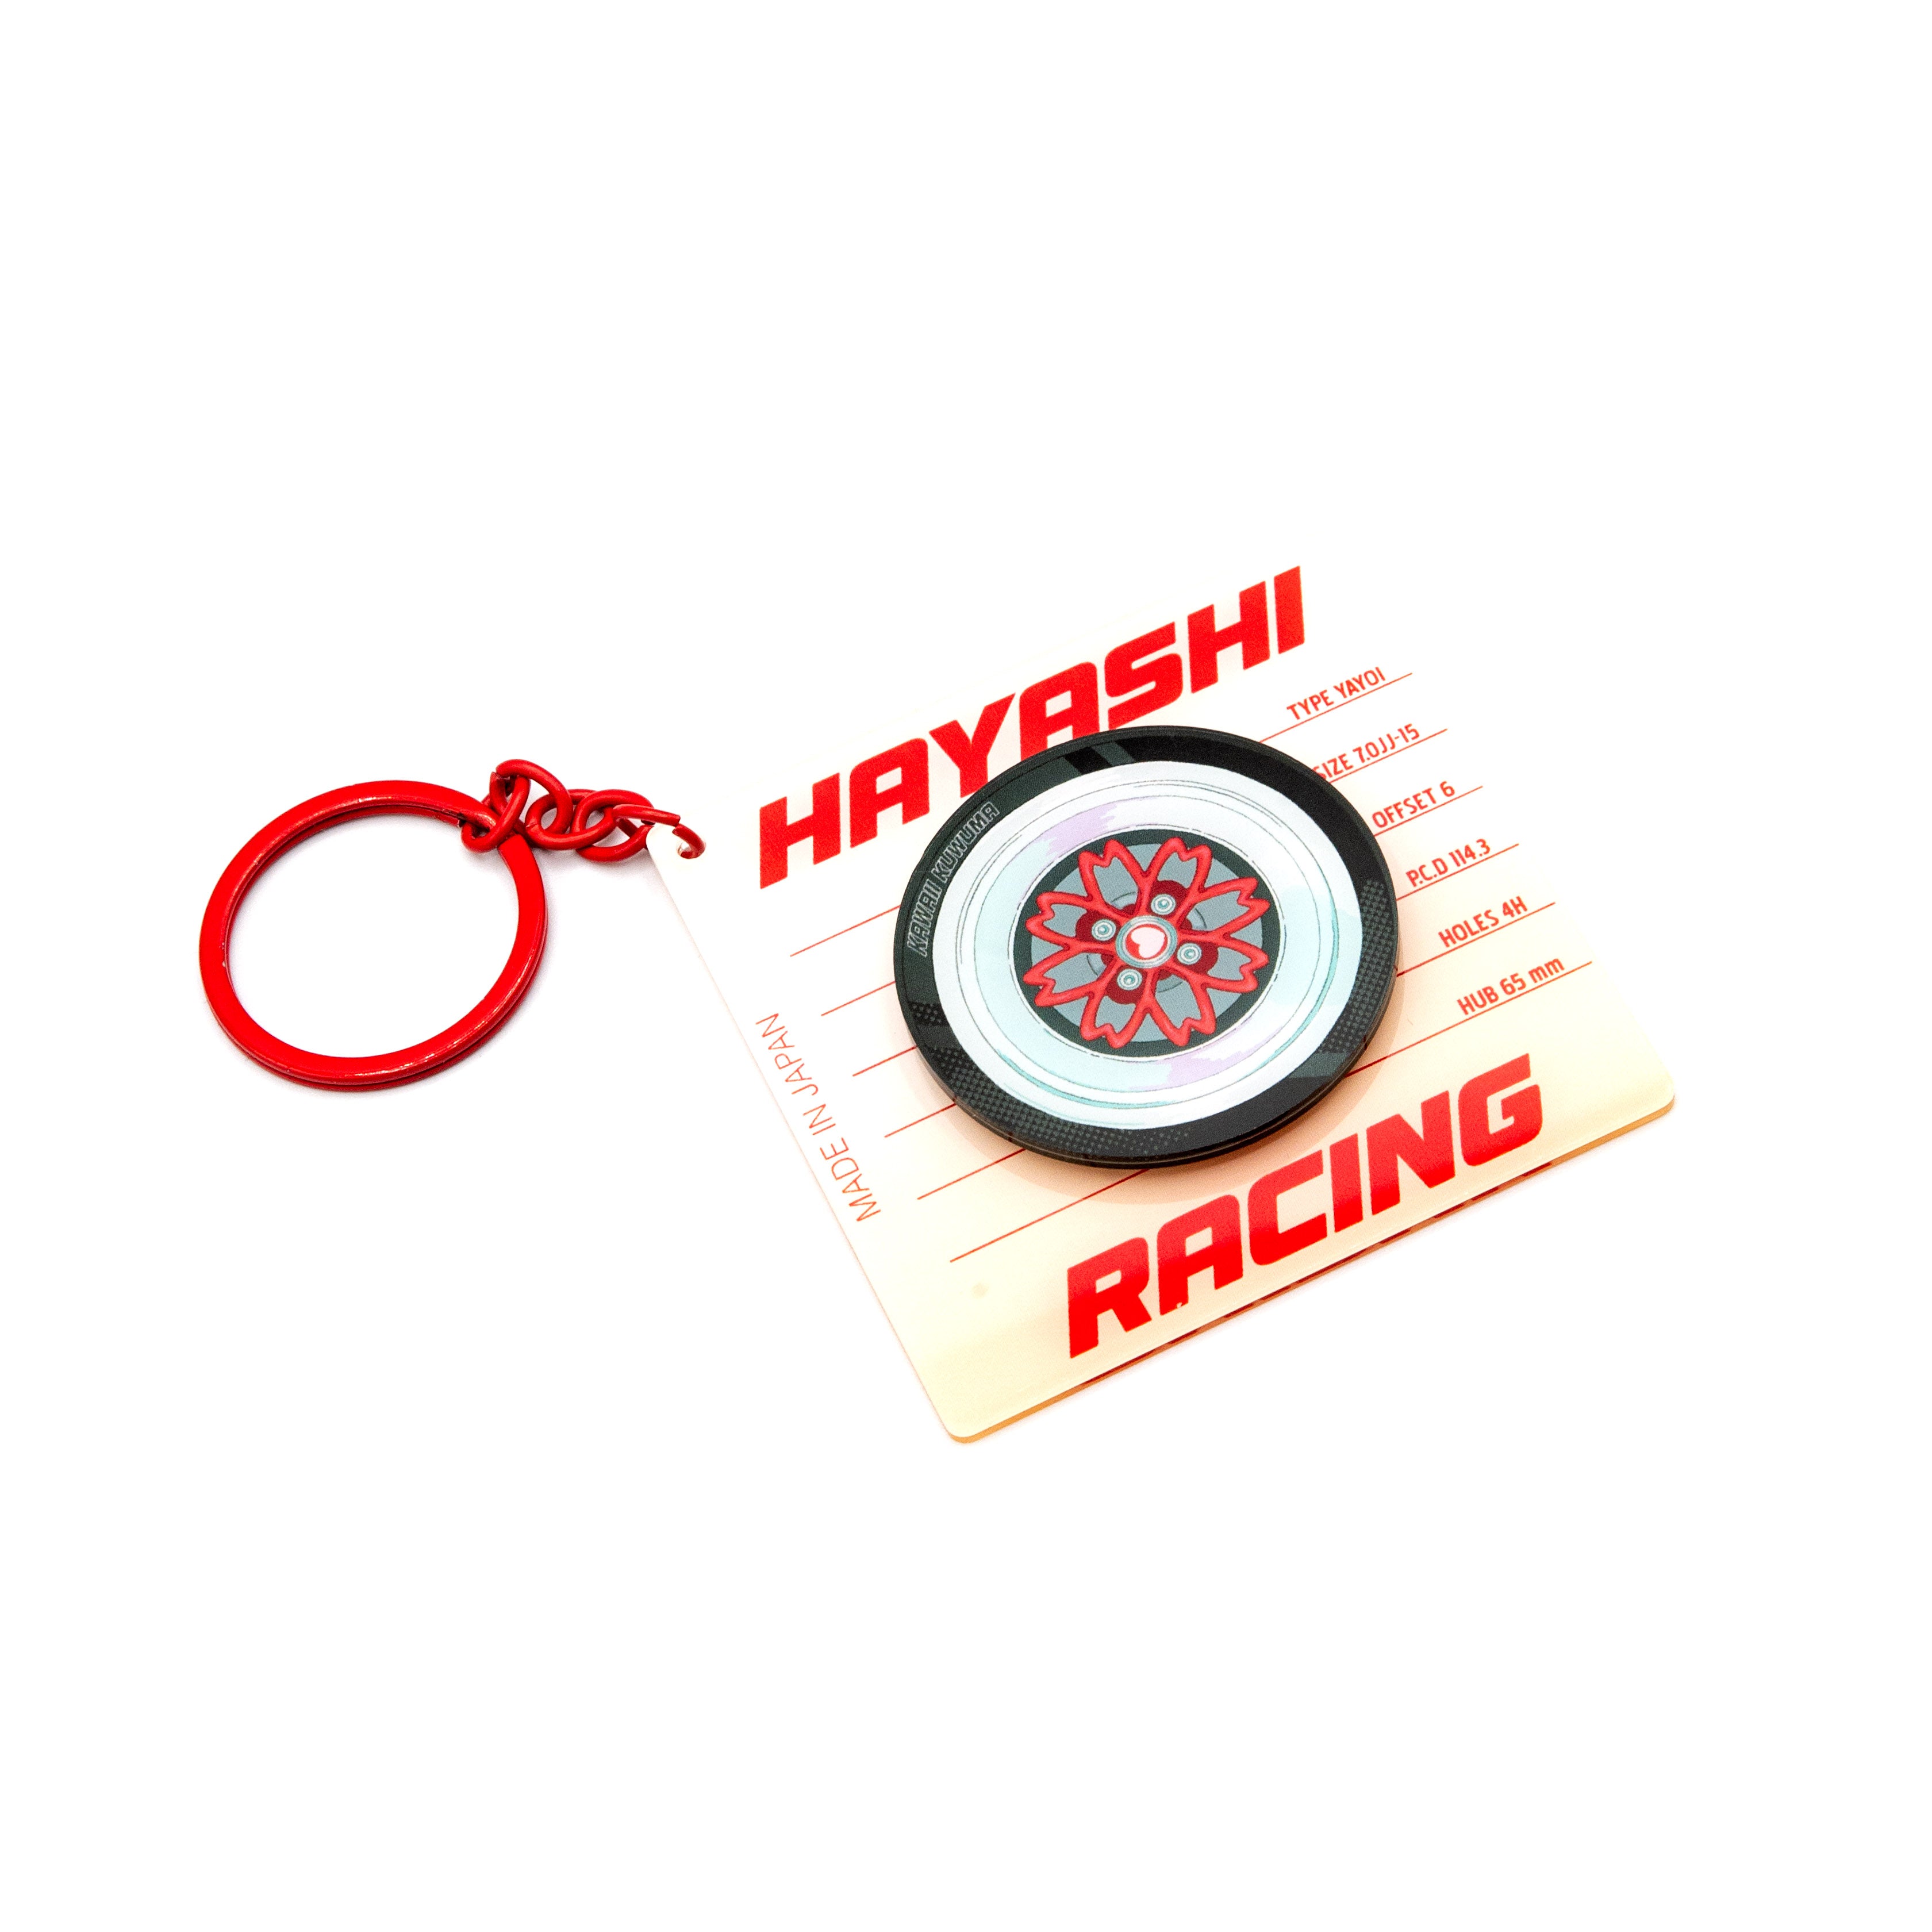 Hayashi Yayoi Spinny Wheel Keychain